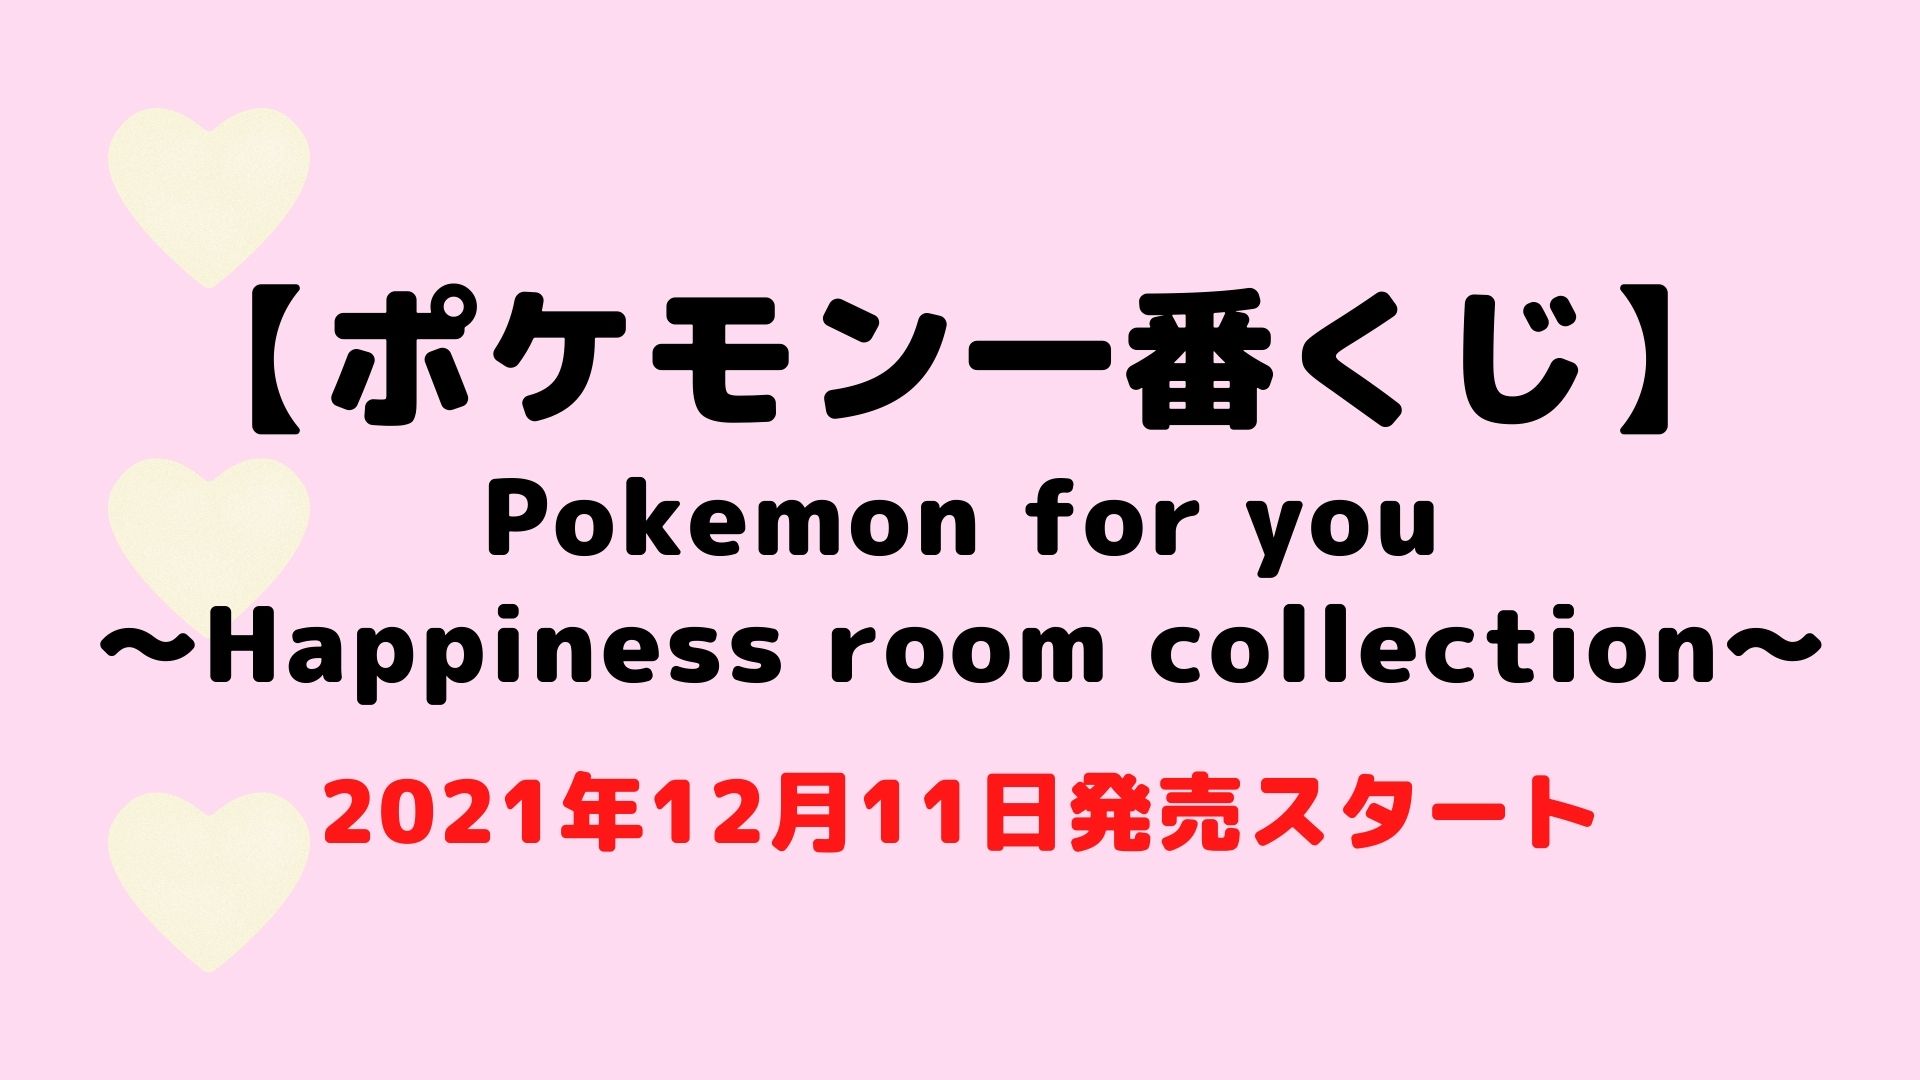 ポケモン一番くじ Pokemon For You Happiness Room Collection ポッチャマやカビゴンなど可愛いグッズが並びます 21年12月11日発売です 販売店舗検索方法も紹介します おいちゃんブログ